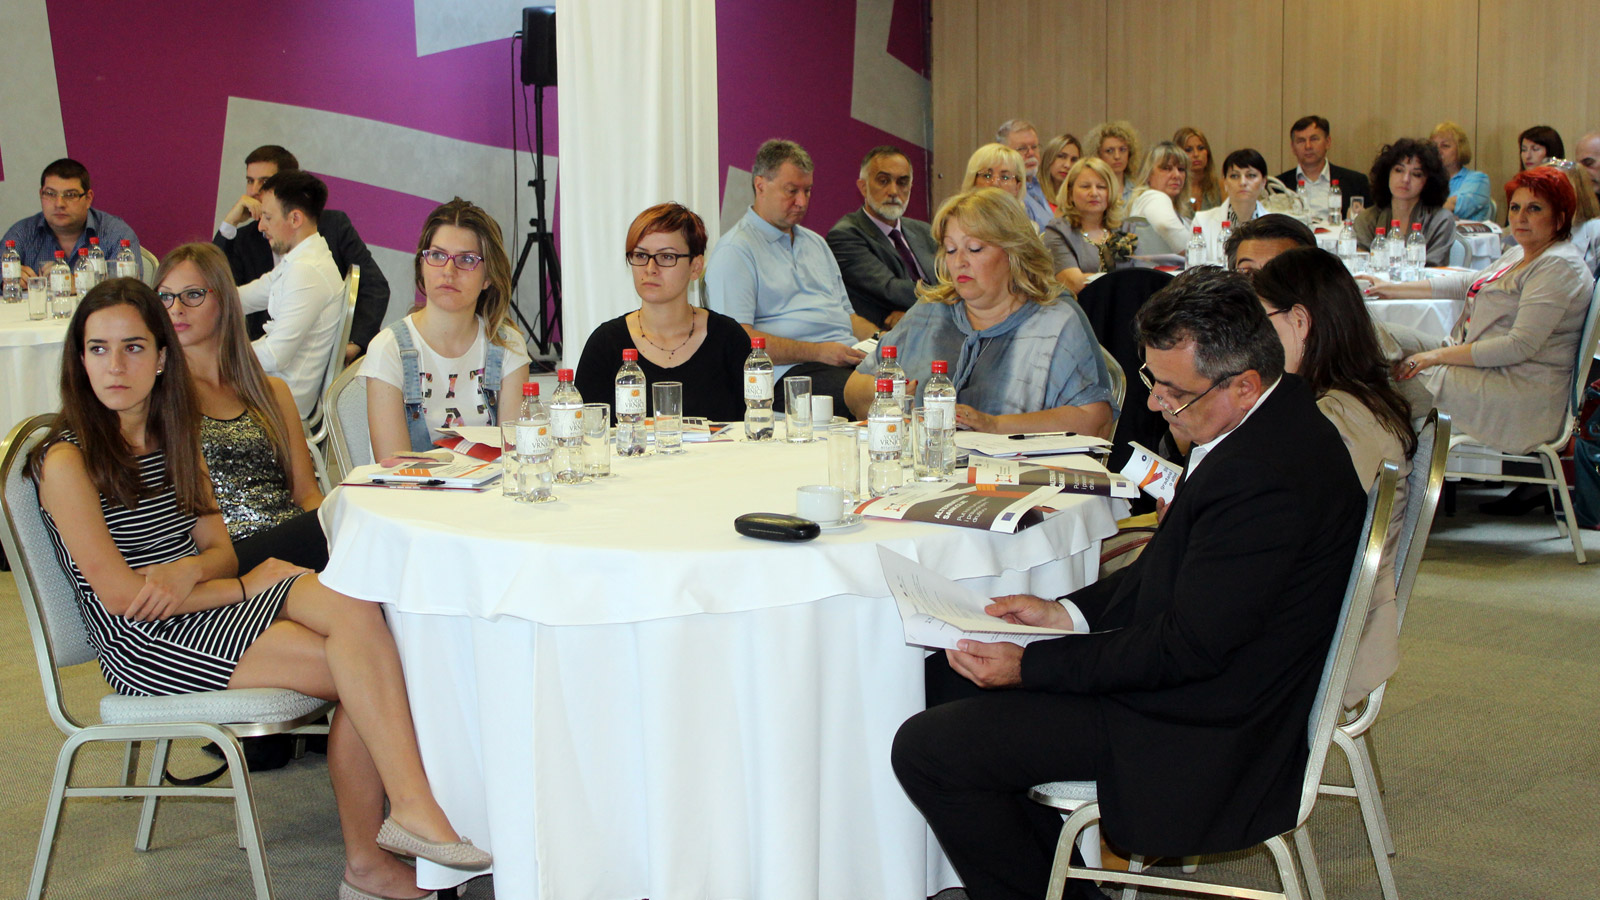 Konferencija Perspektive alternativnih krivičnih sankcija i mera restorativne pravde u Srbiji